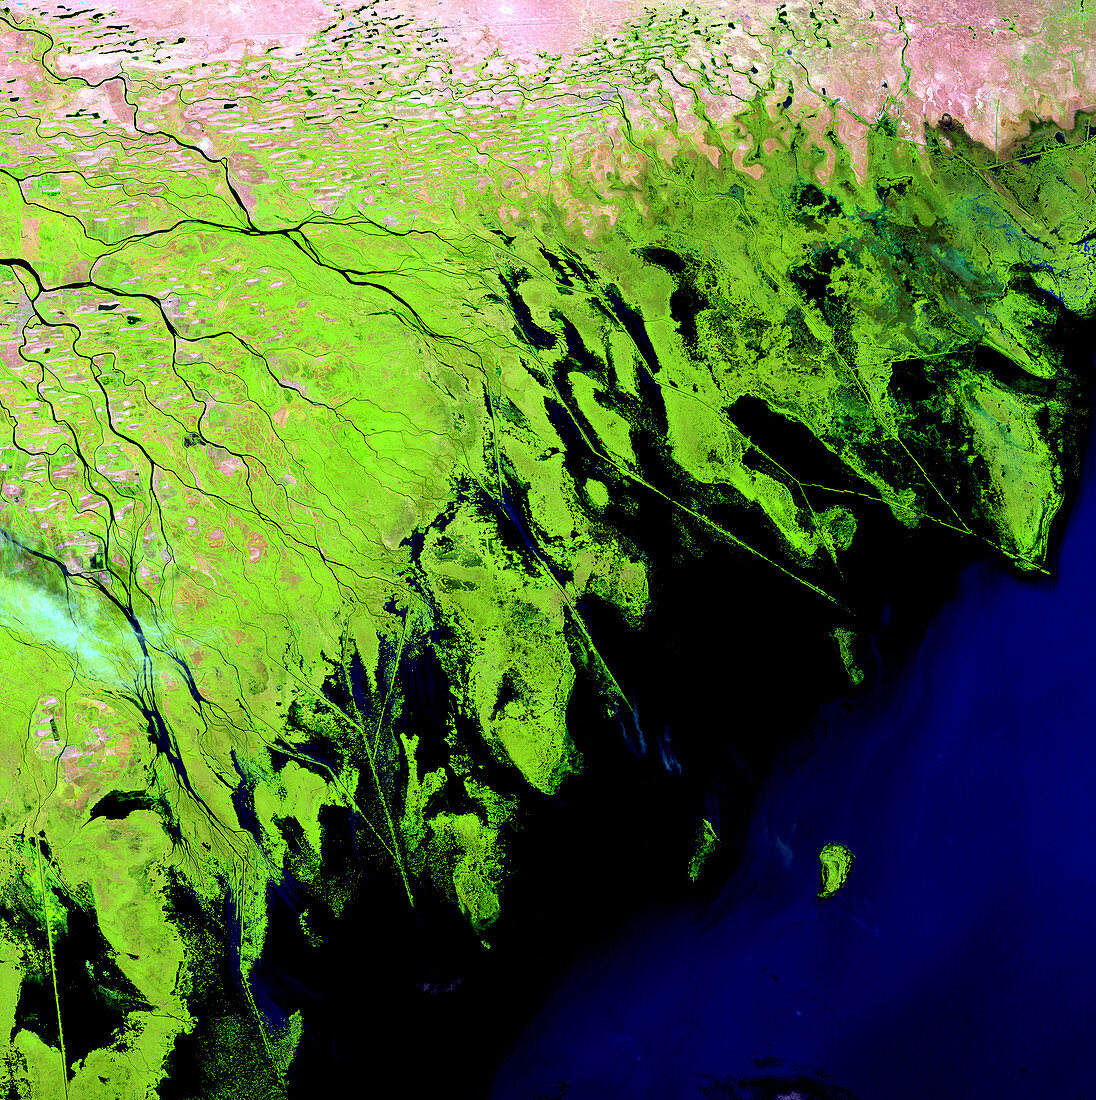 Volga Delta,satellite image